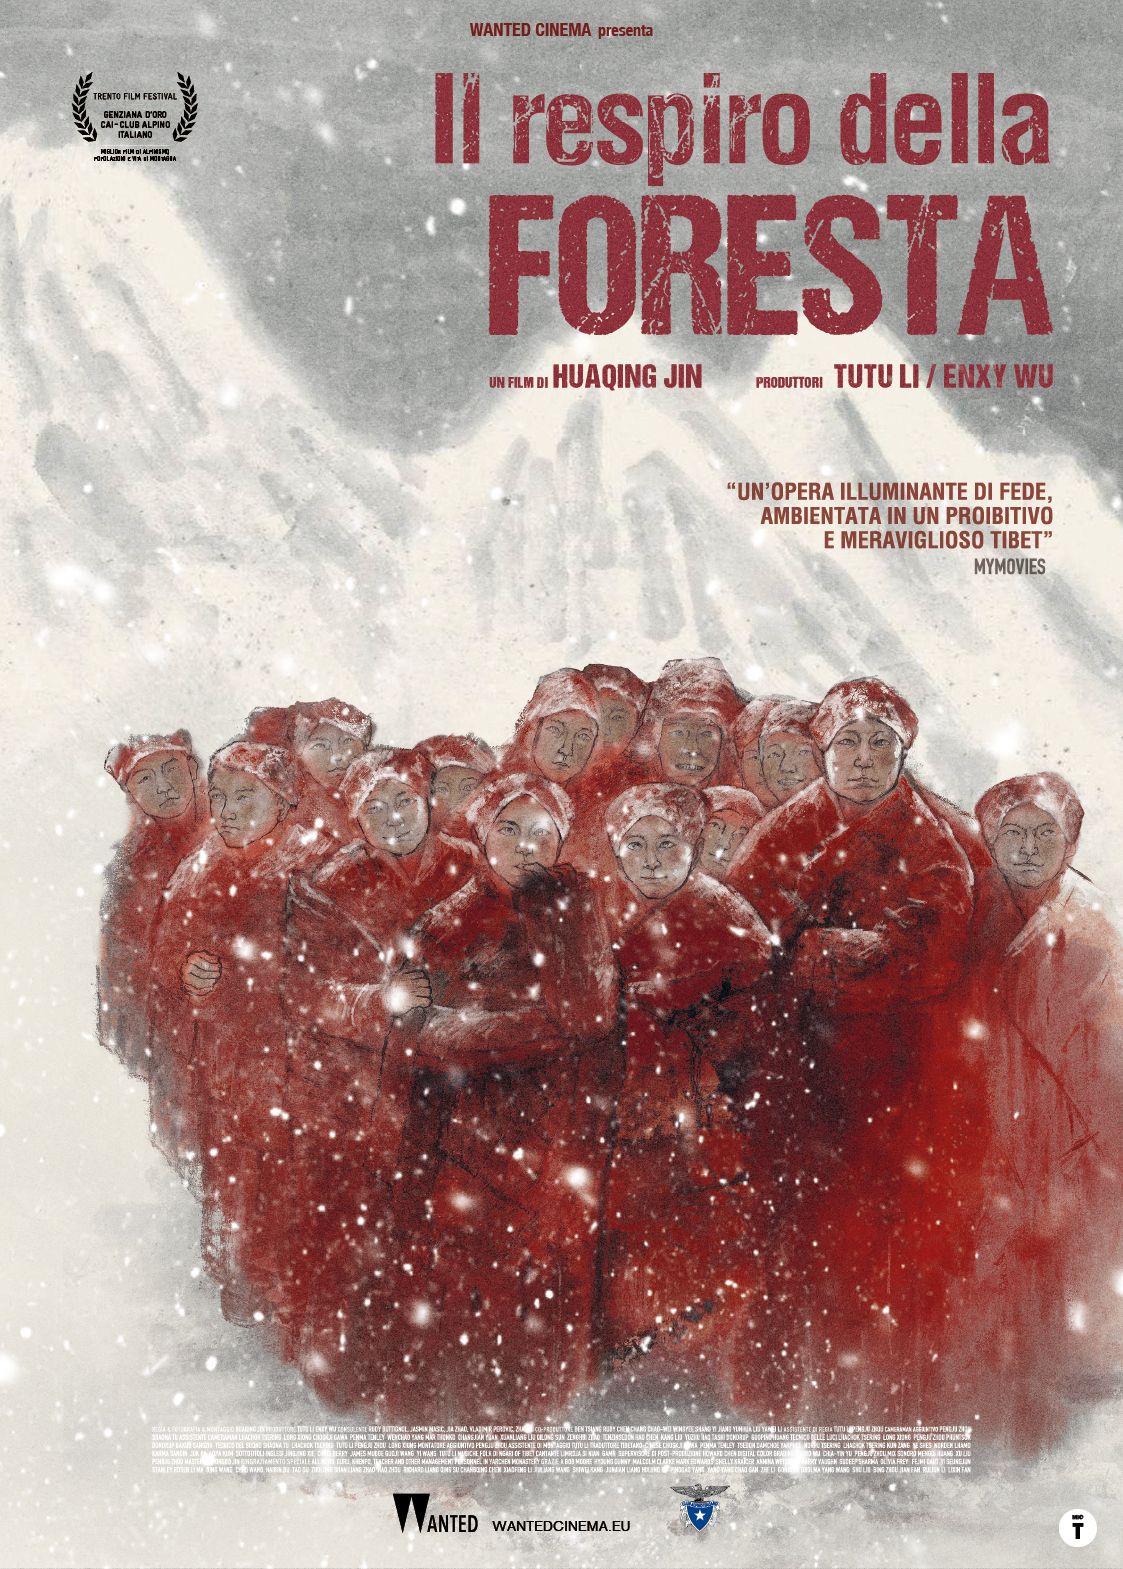 A Milano la proiezione in anteprima del film “Il respiro della foresta” di Jin Huaqing